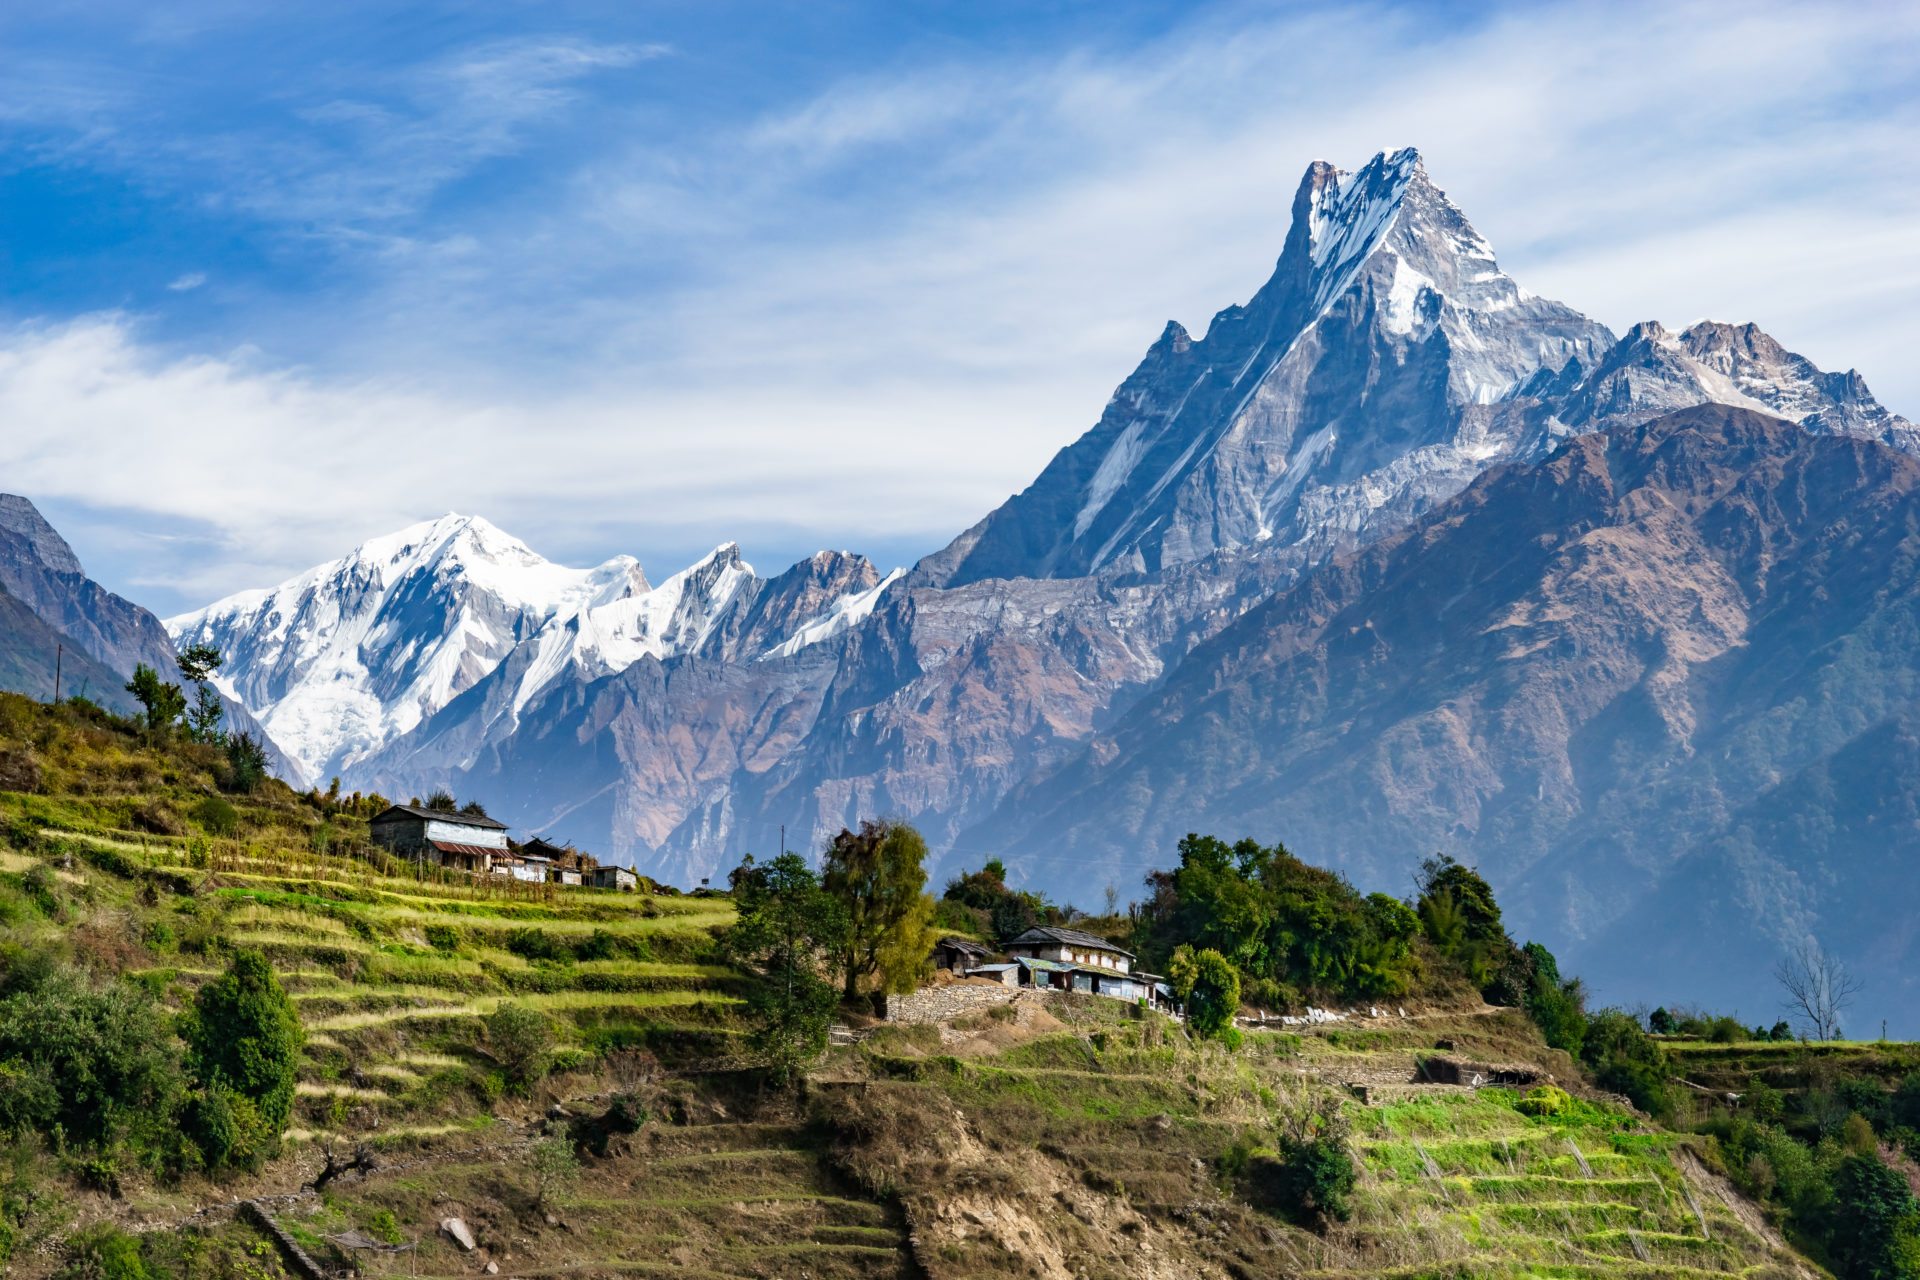 List of Travel Agencies in Nepal